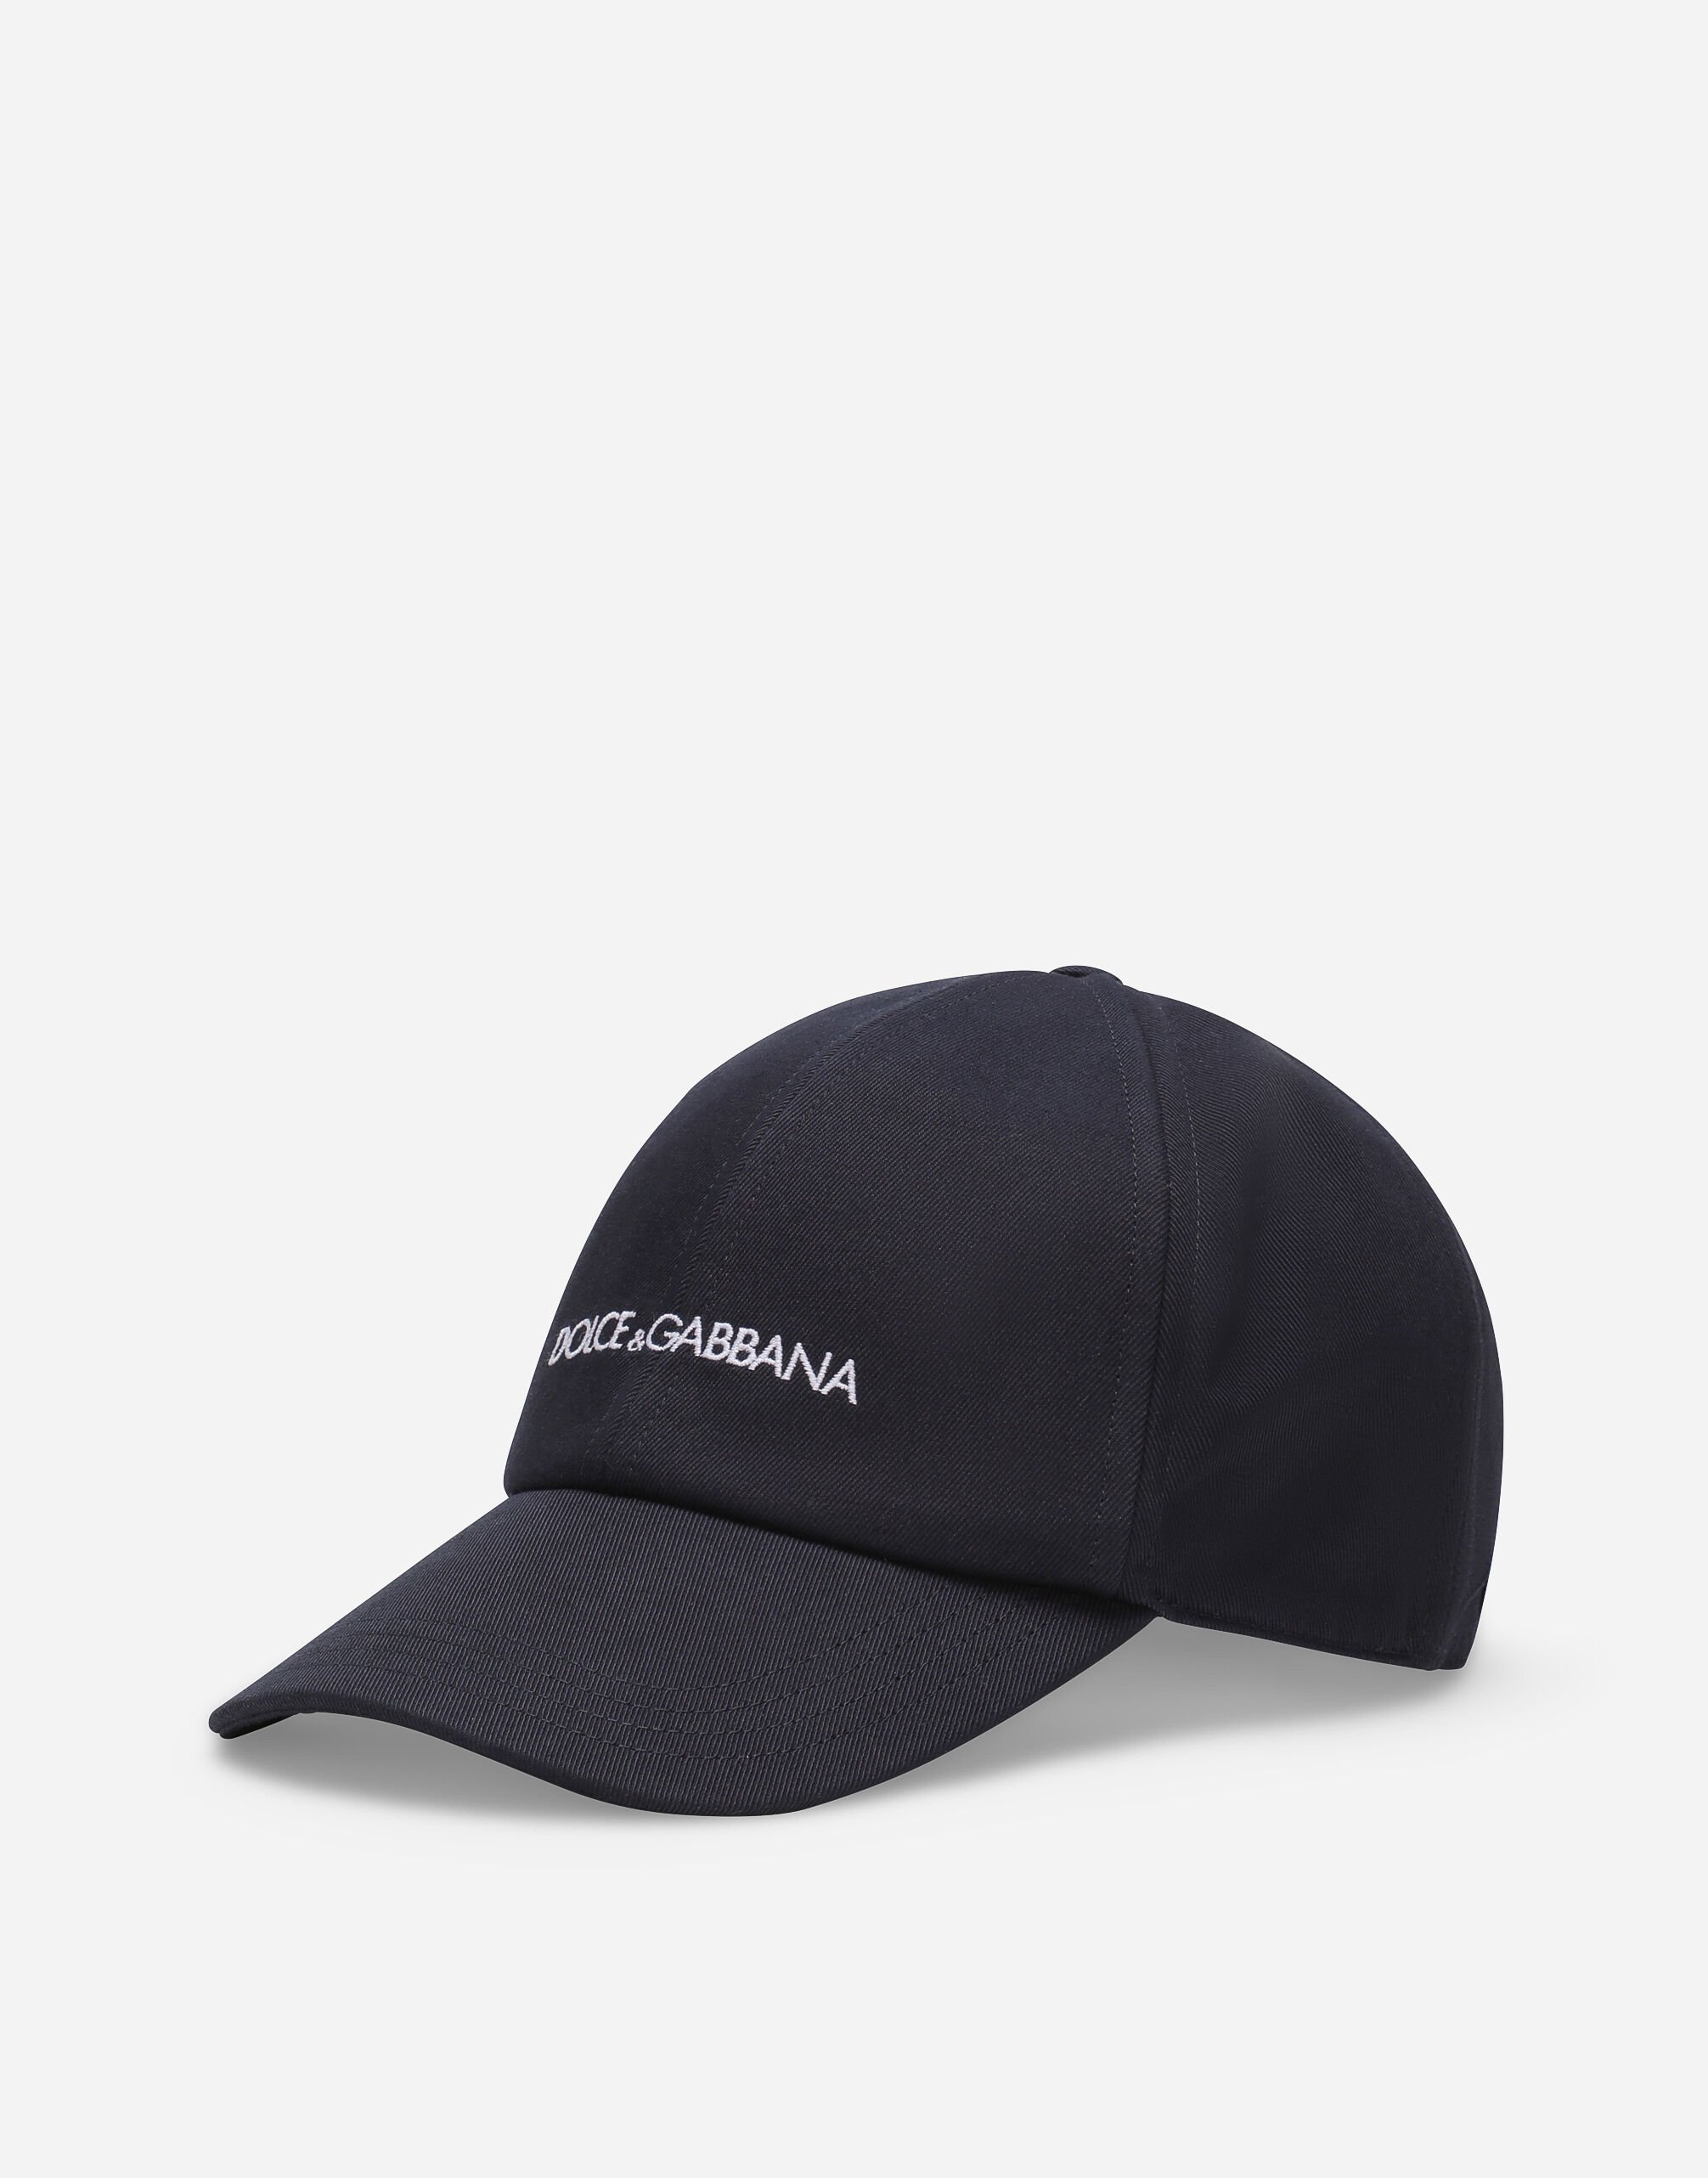 Dolce & Gabbana Cotton baseball cap with Dolce&Gabbana logo Black VG4416VP587